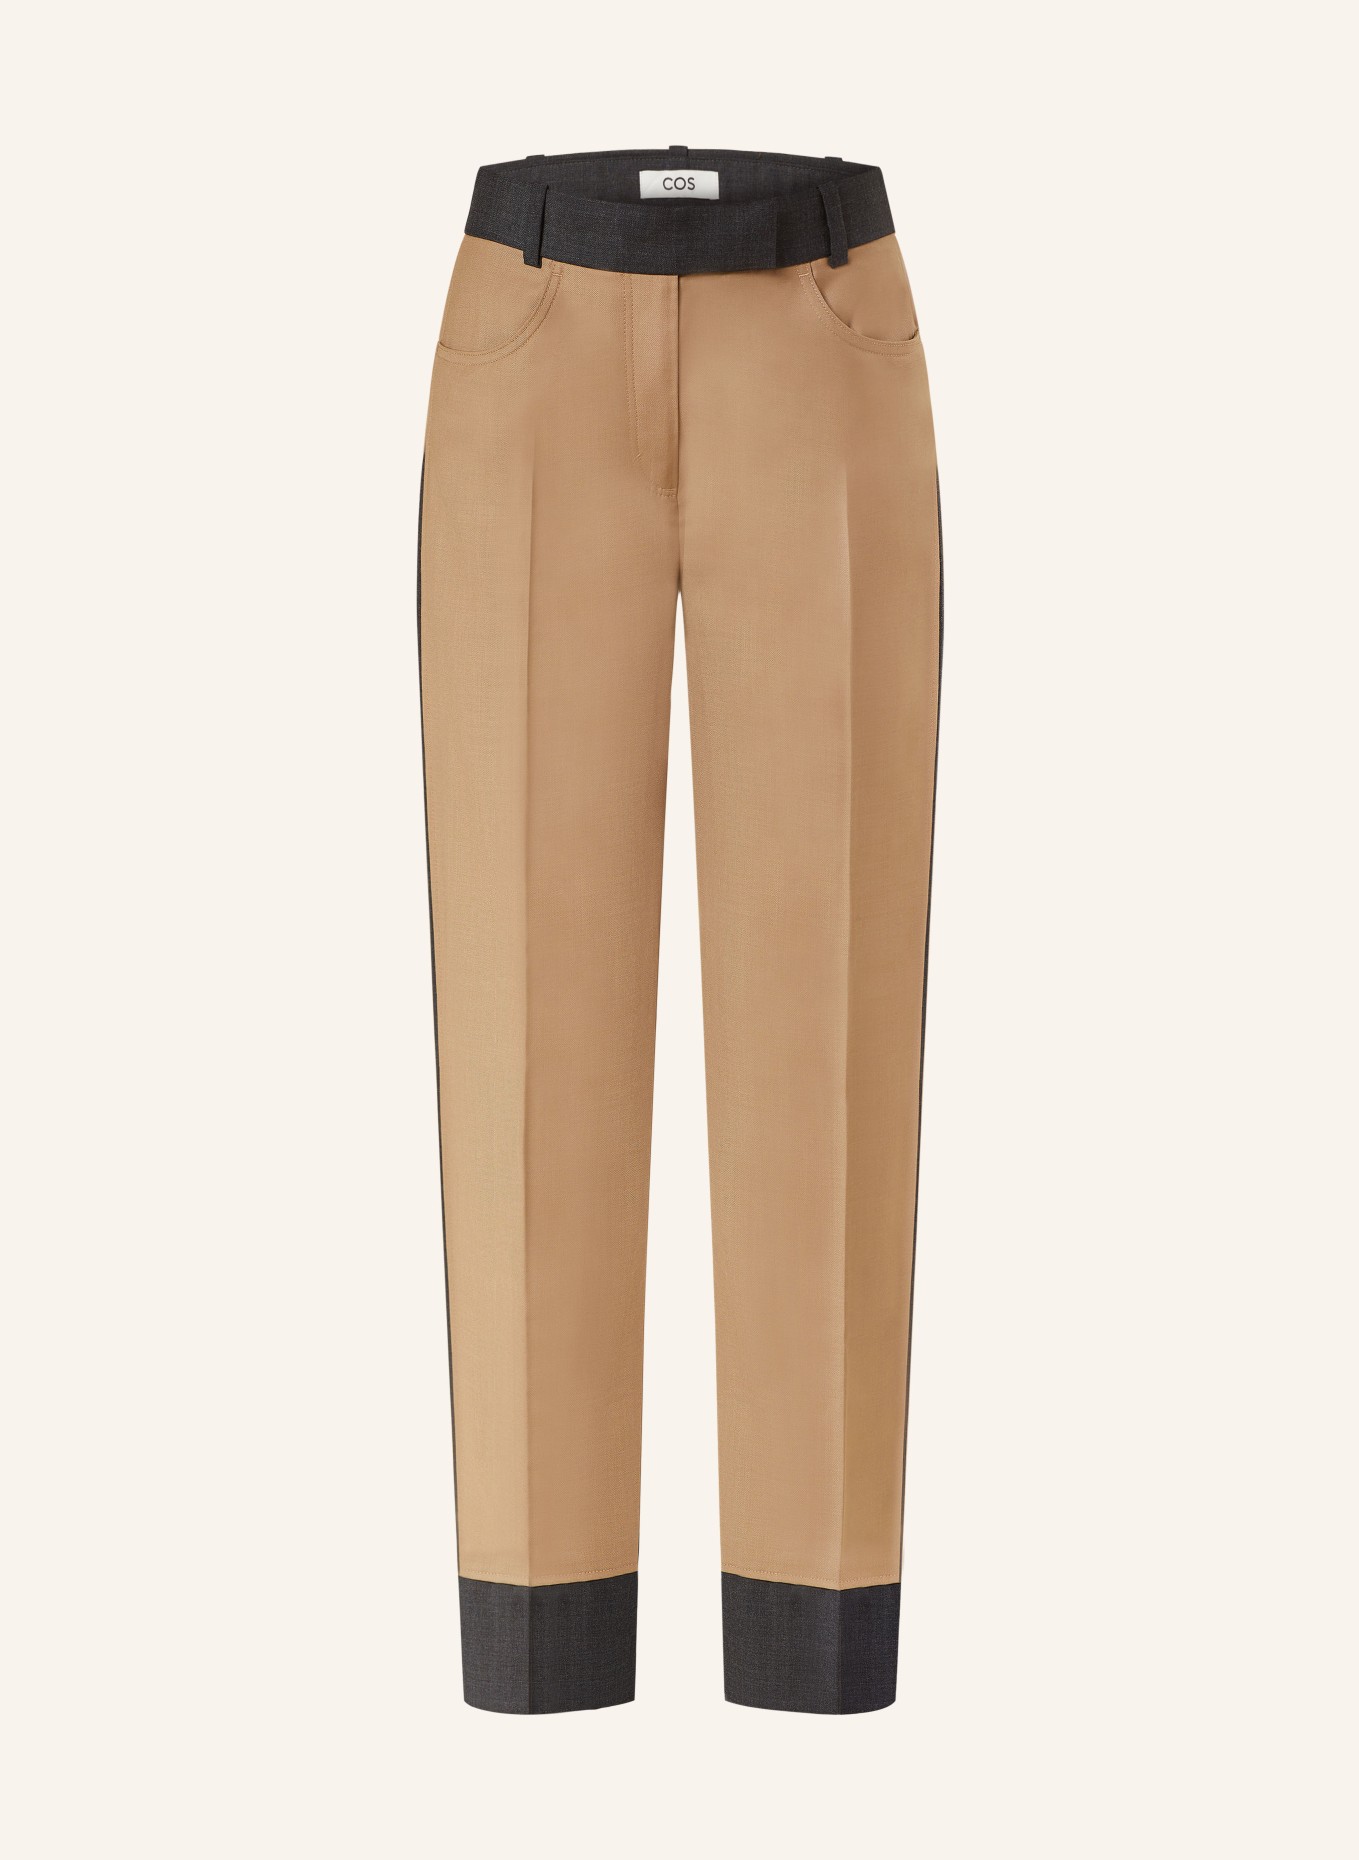 COS Trousers, Color: COGNAC/ DARK GRAY (Image 1)